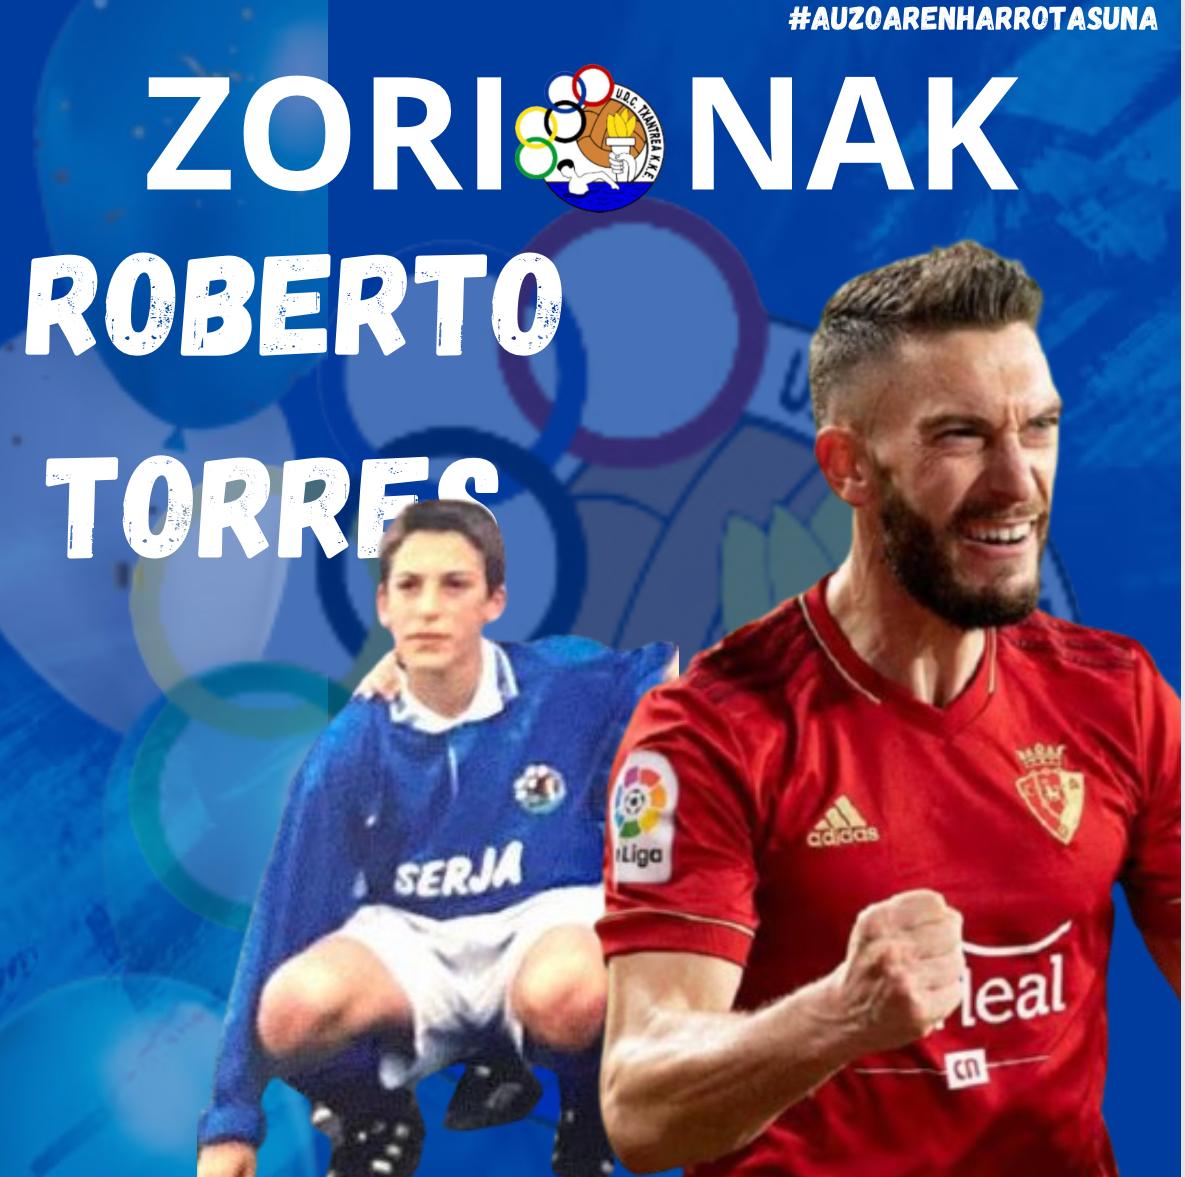 ZORIONAK ROBERTO TORRES